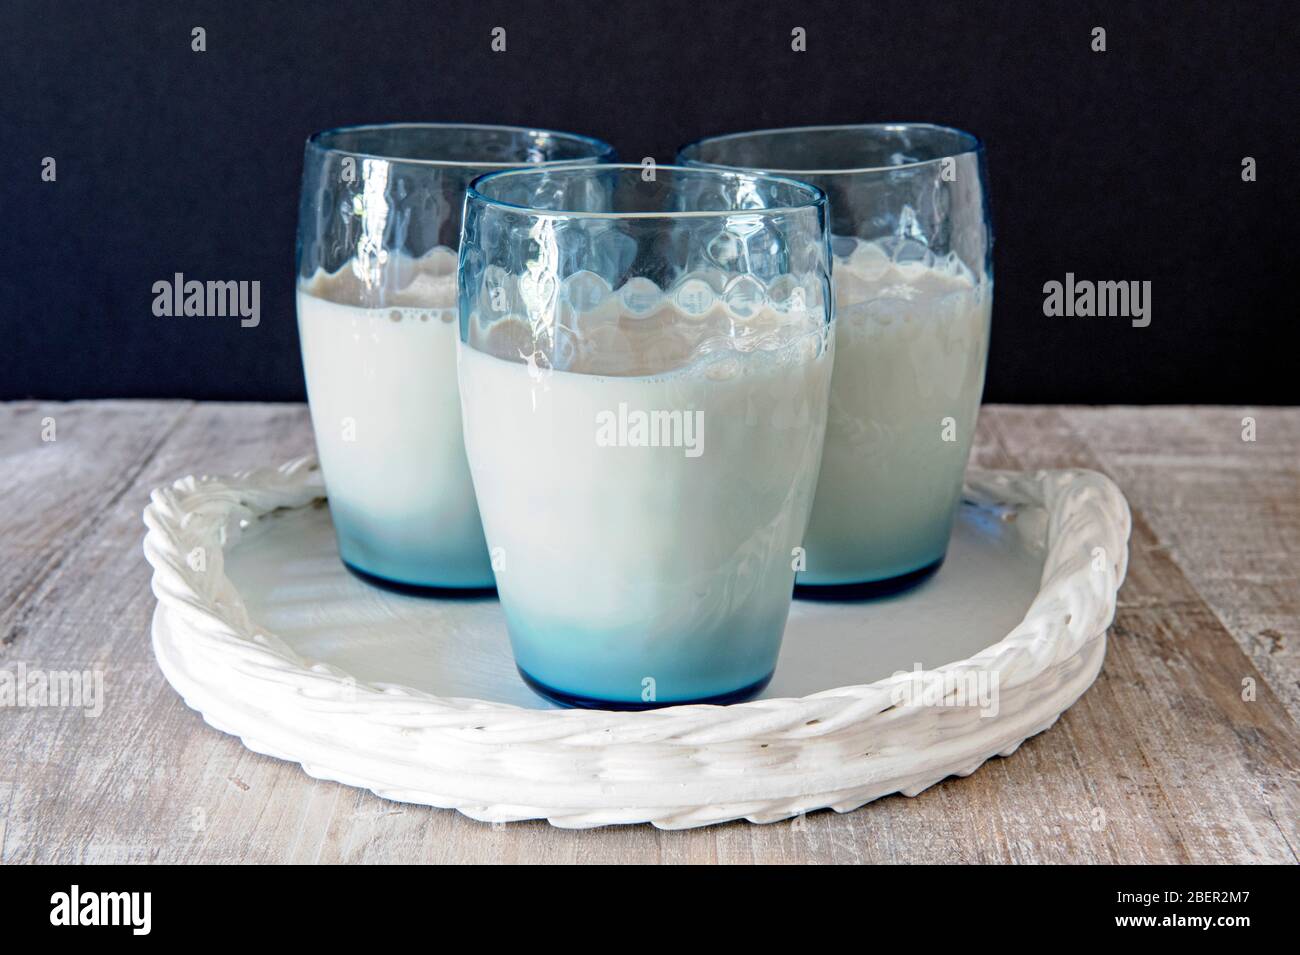 Drei blaue Vintage-Gläser oder Becher veganer Hafermilch auf weißem Tablett mit schwarzem Hintergrund Stockfoto